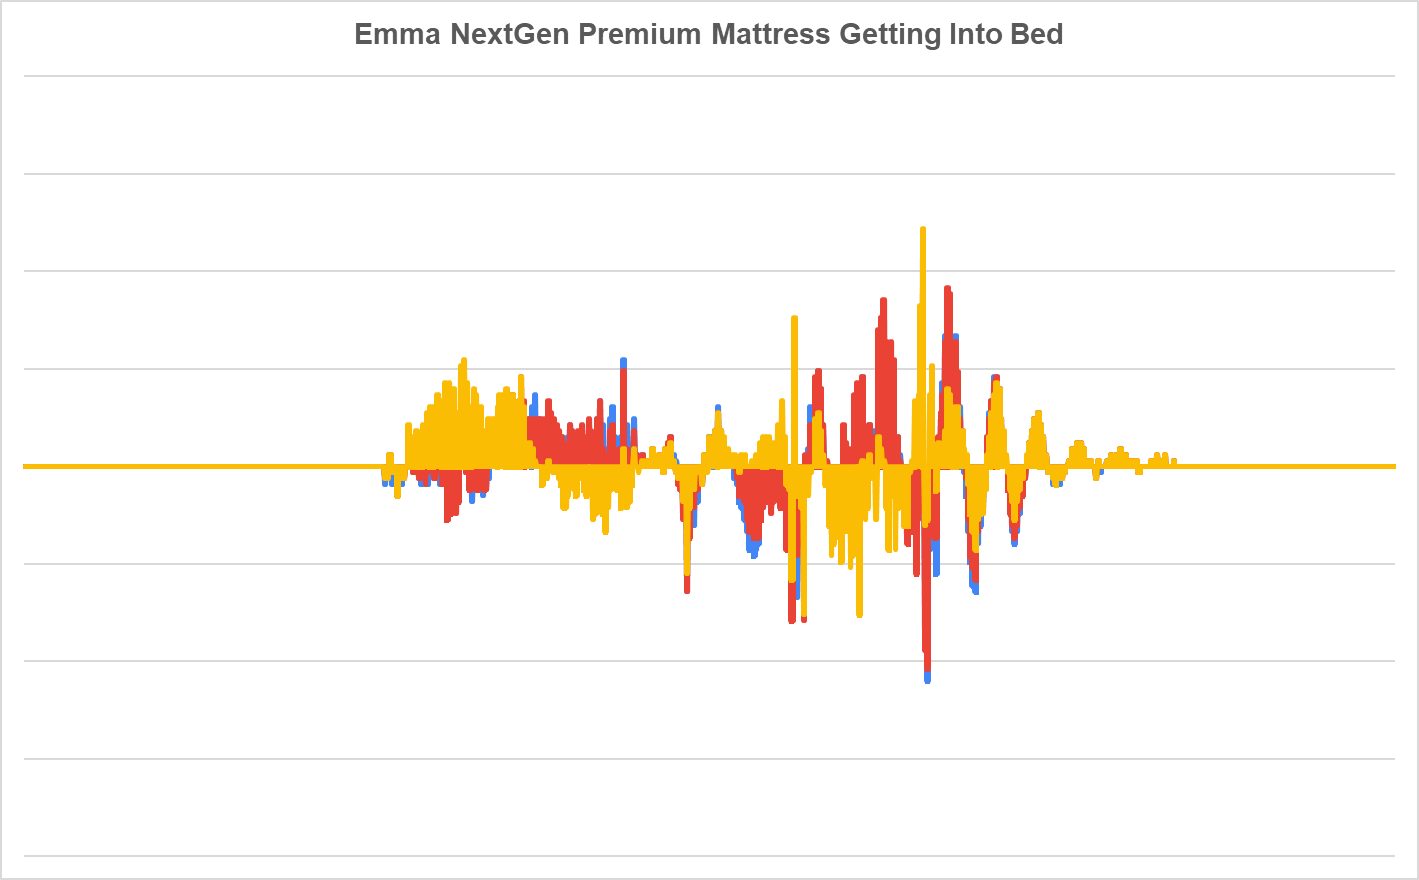 Colchón premium Emma NextGen para acostarse en la cama